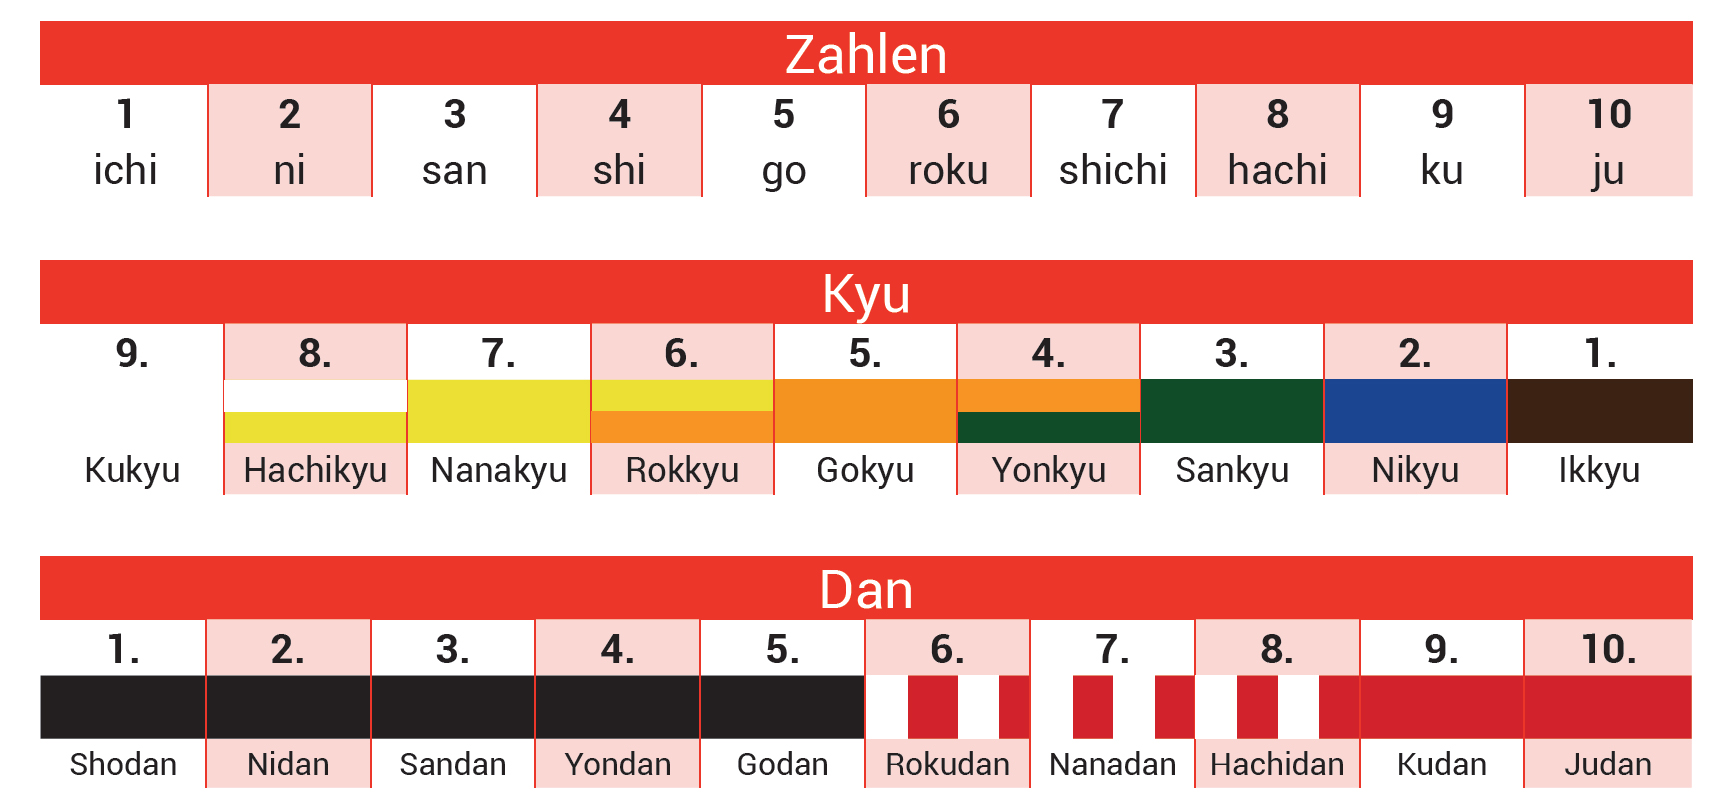 Zahlen-, Kyu- und Danbezeichnungen